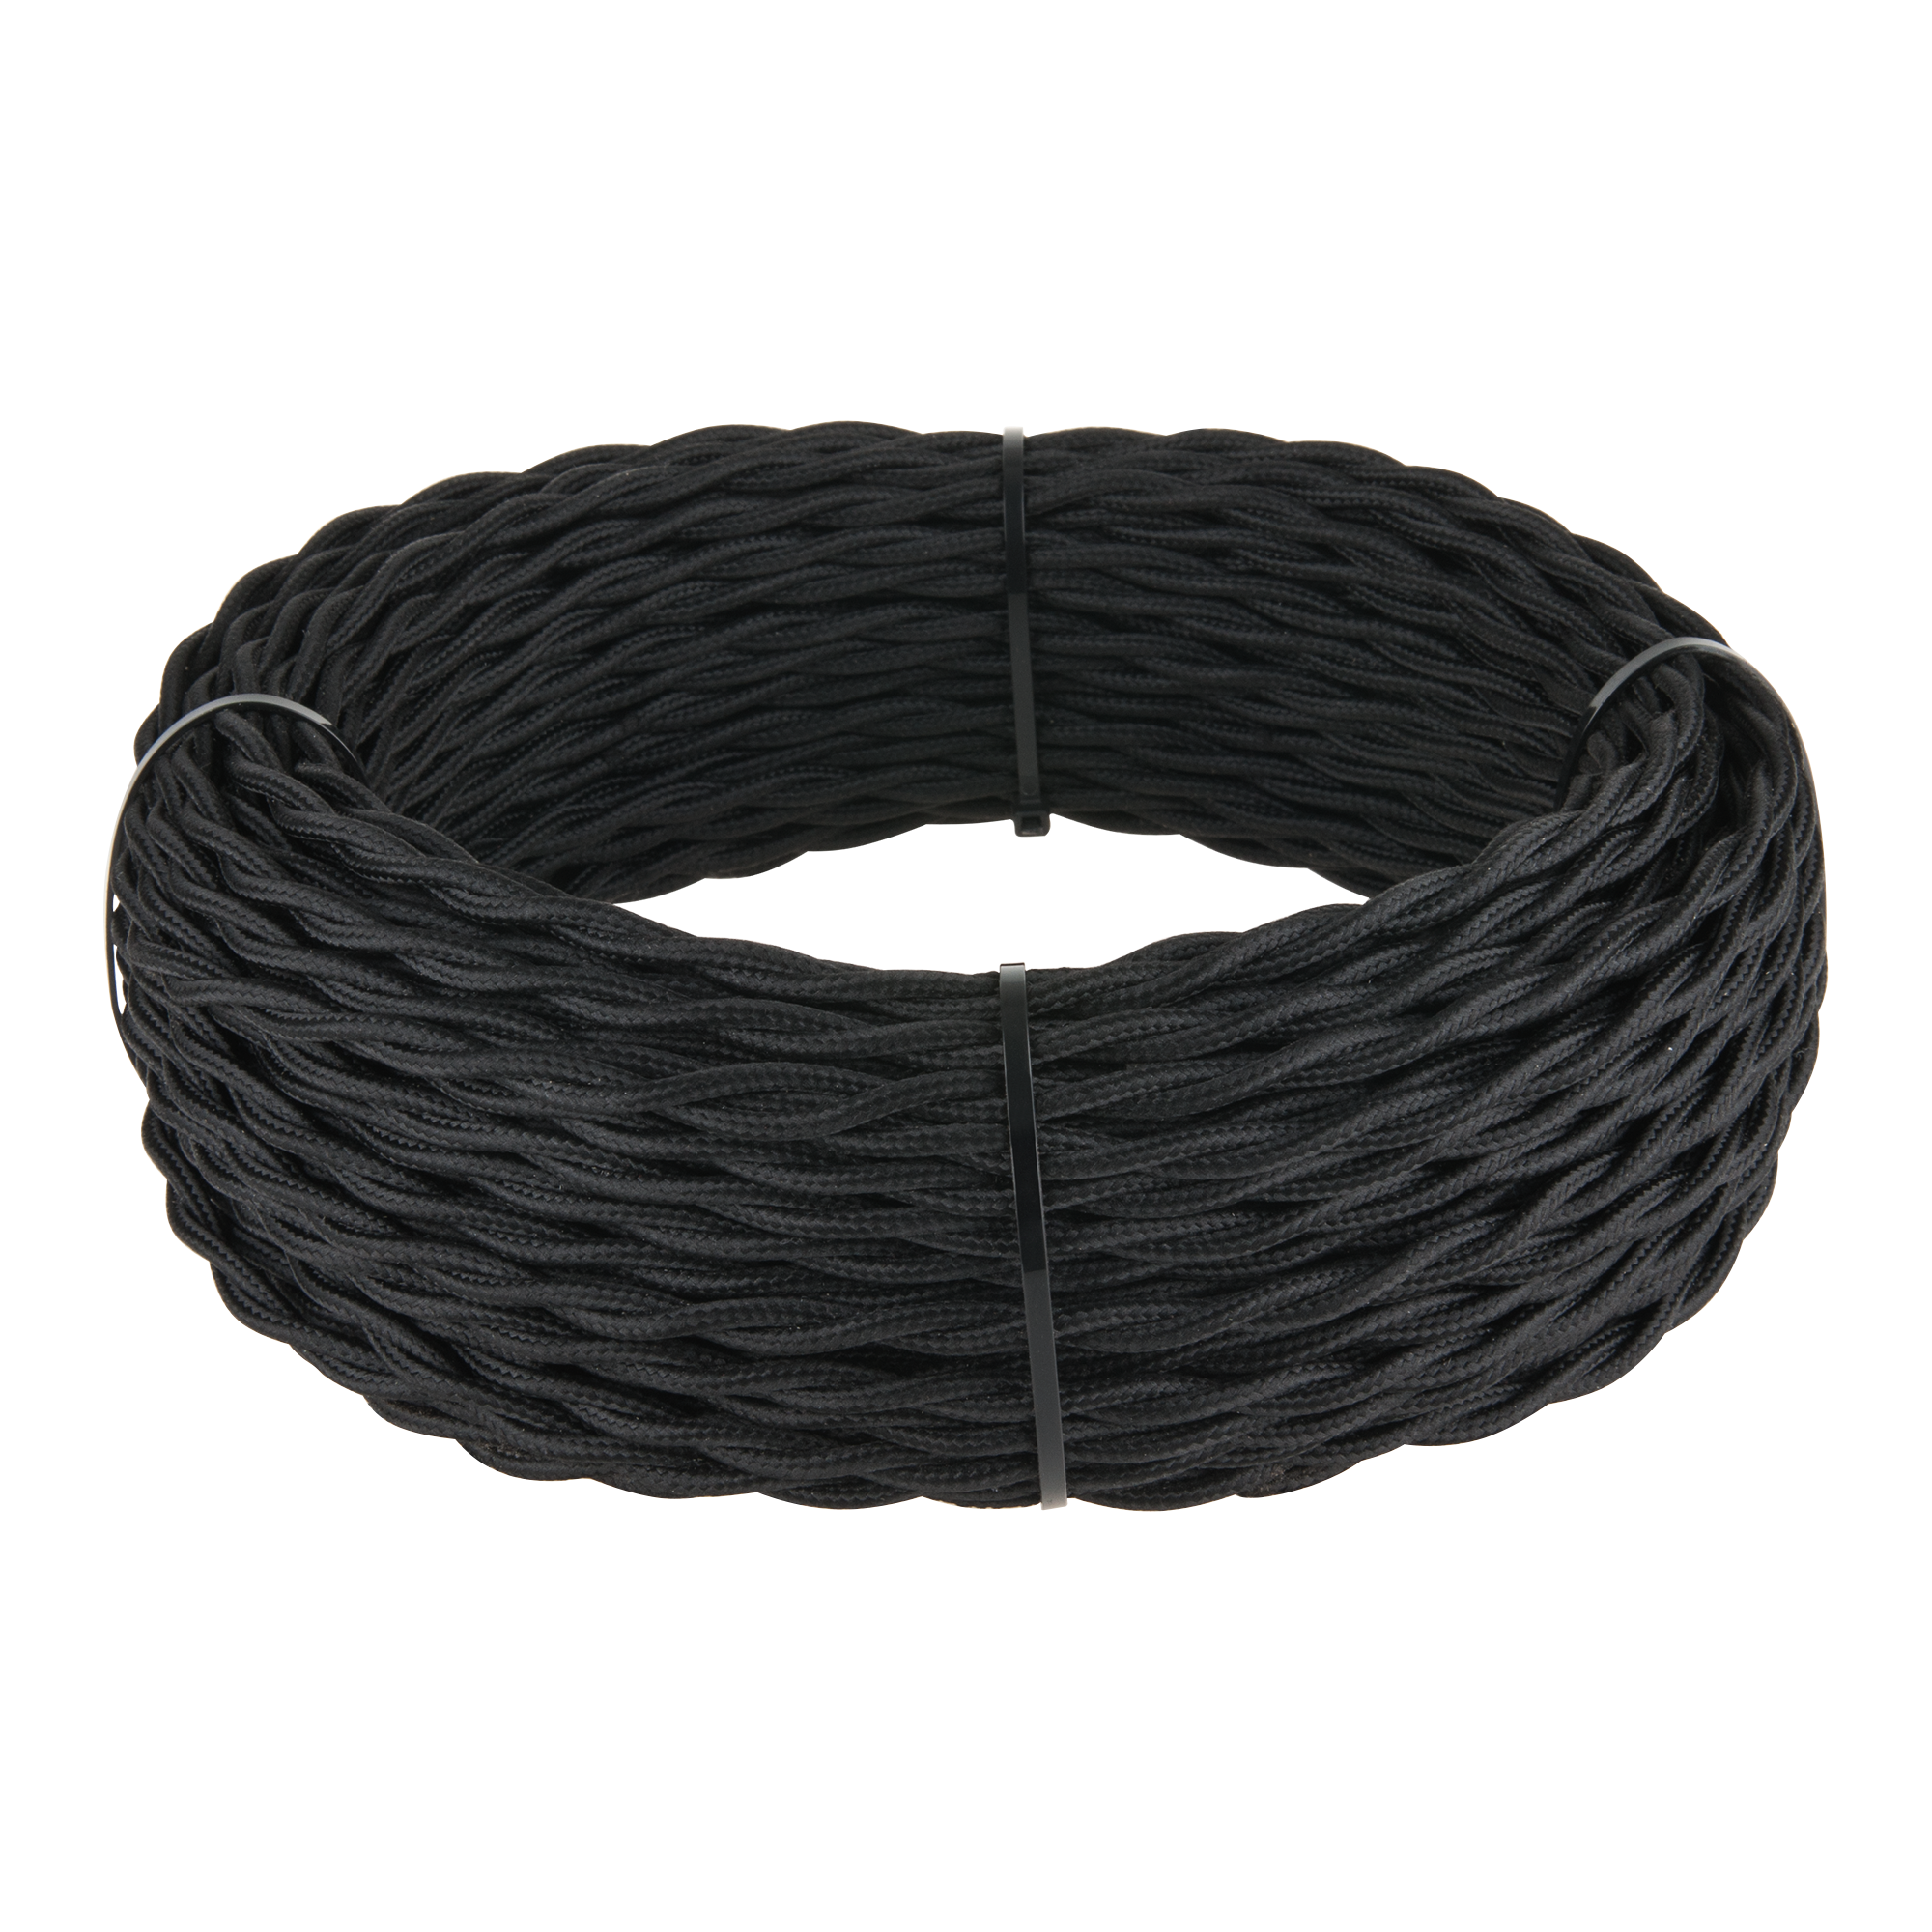 Ретро кабель витой 3х2,5 (черный) 20 м (под заказ) W6453308 W6453308